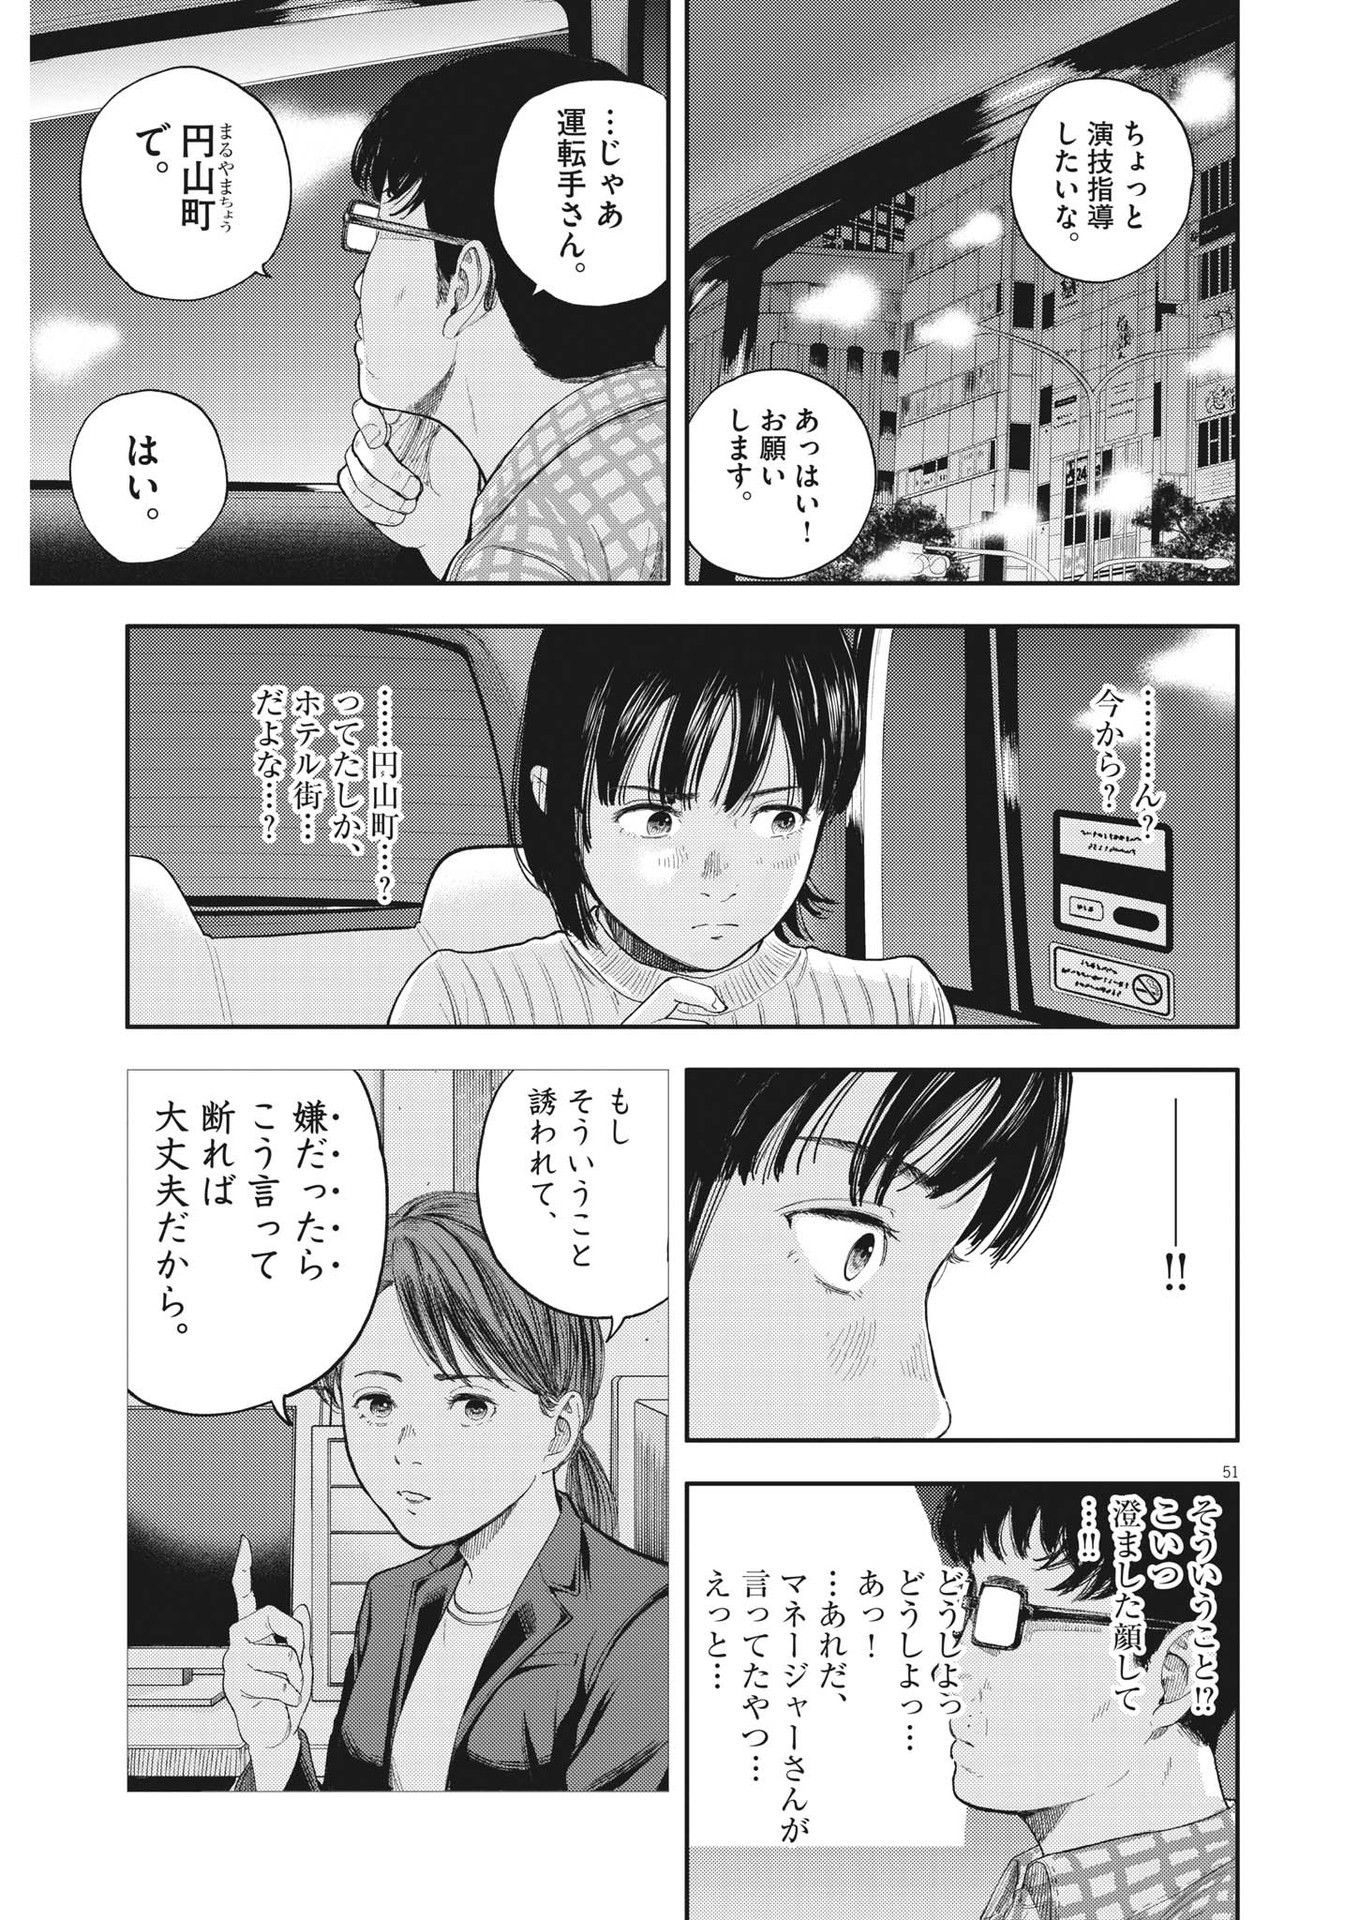 Yumenashi-sensei no Shinroshidou - Chapter 1 - Page 51